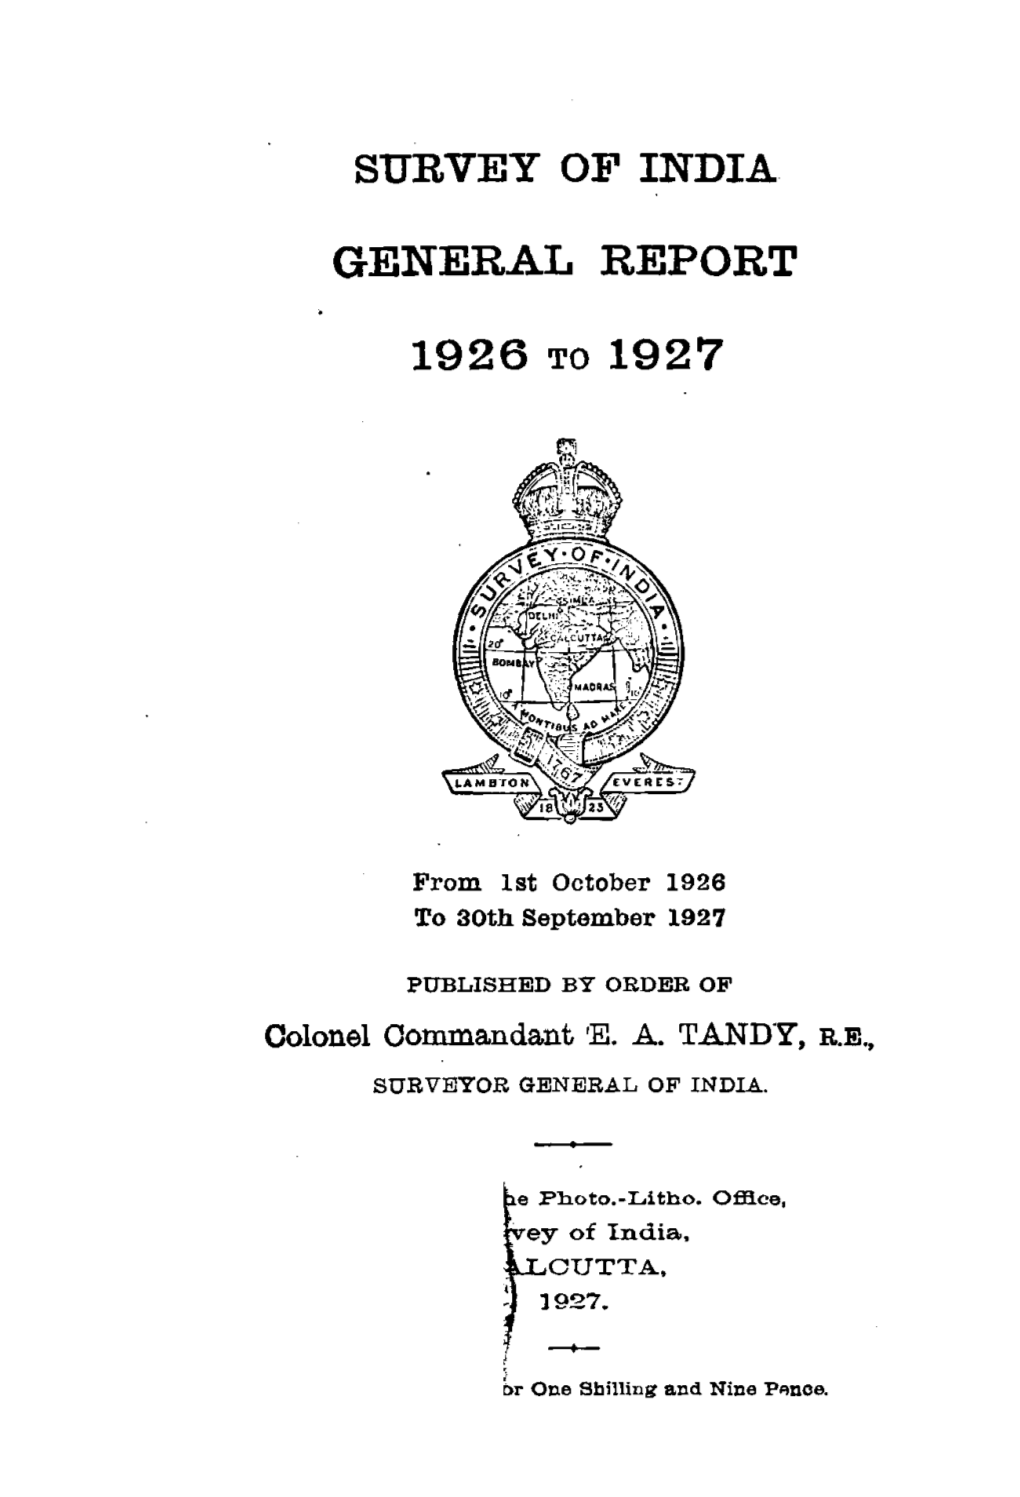 General Report